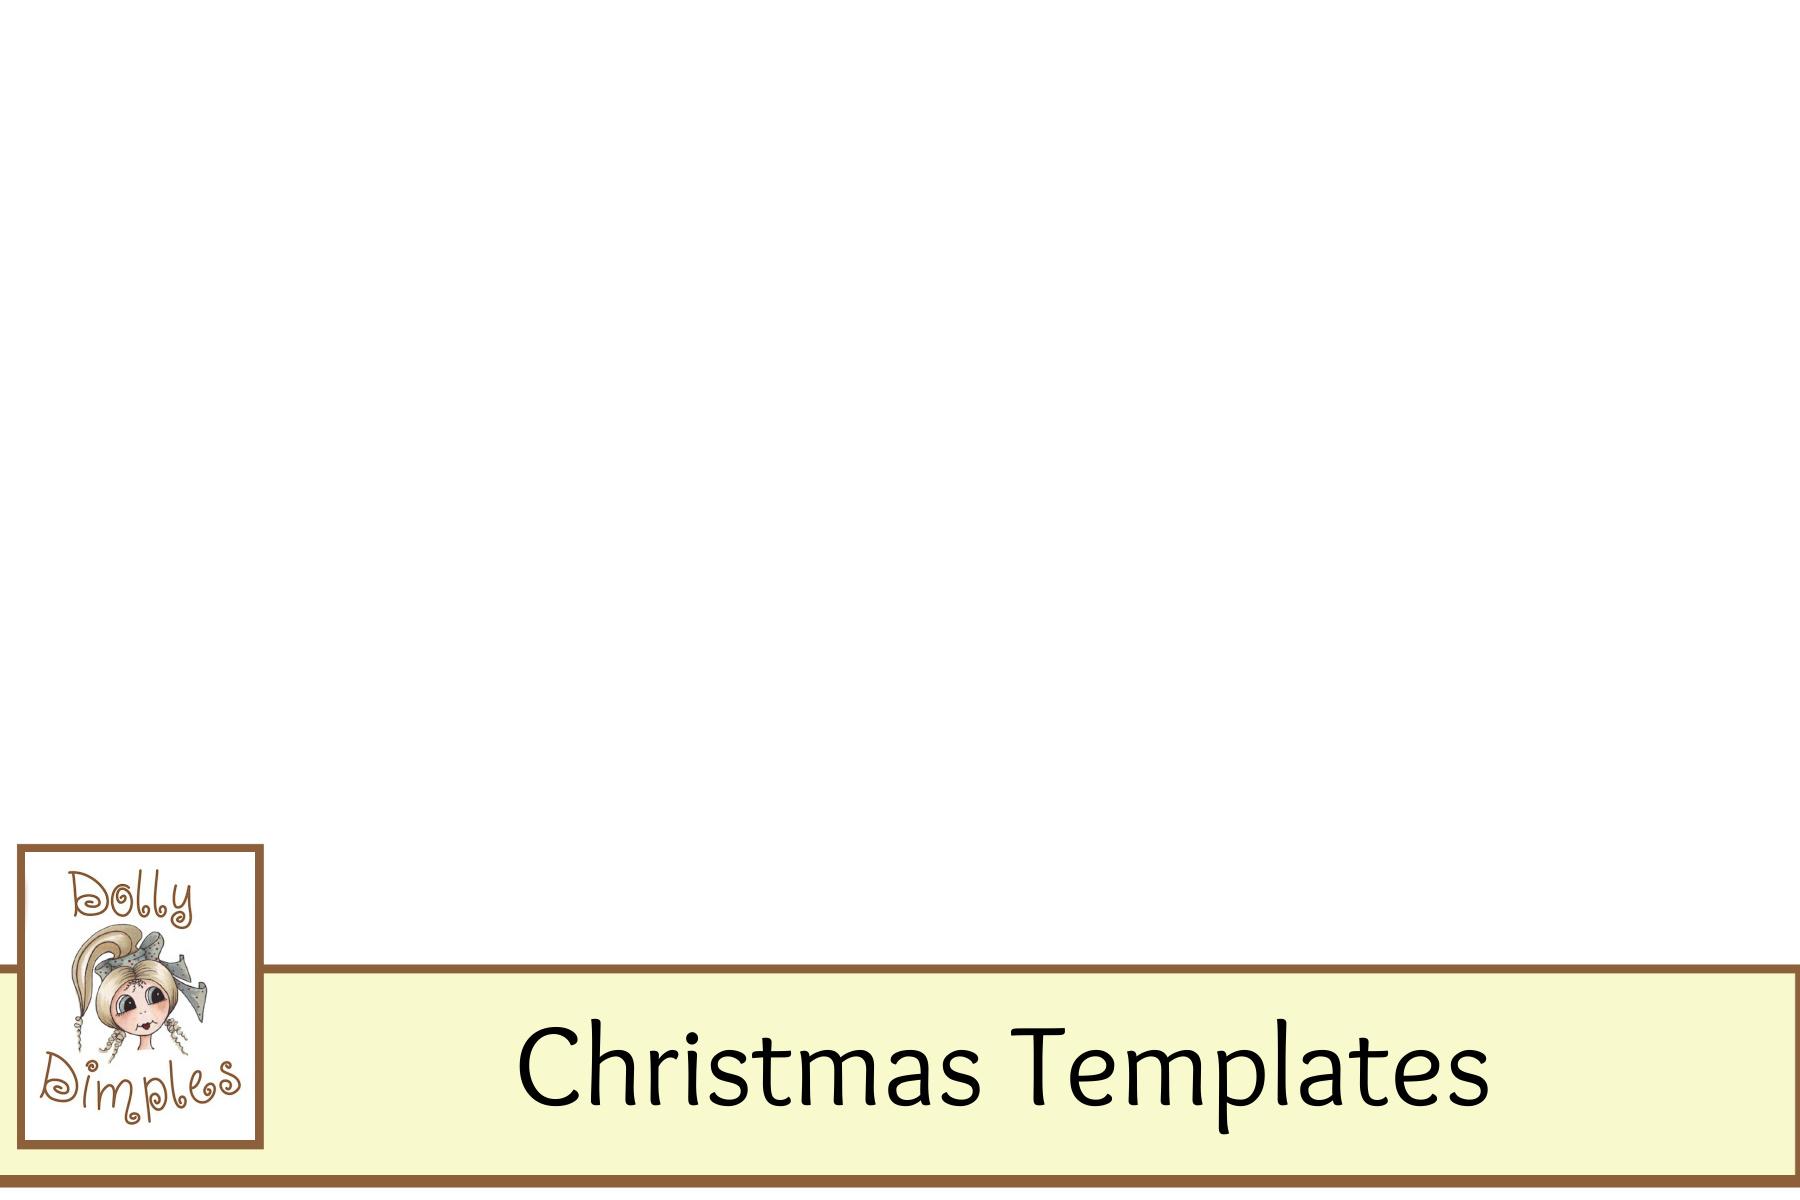 Christmas Templates